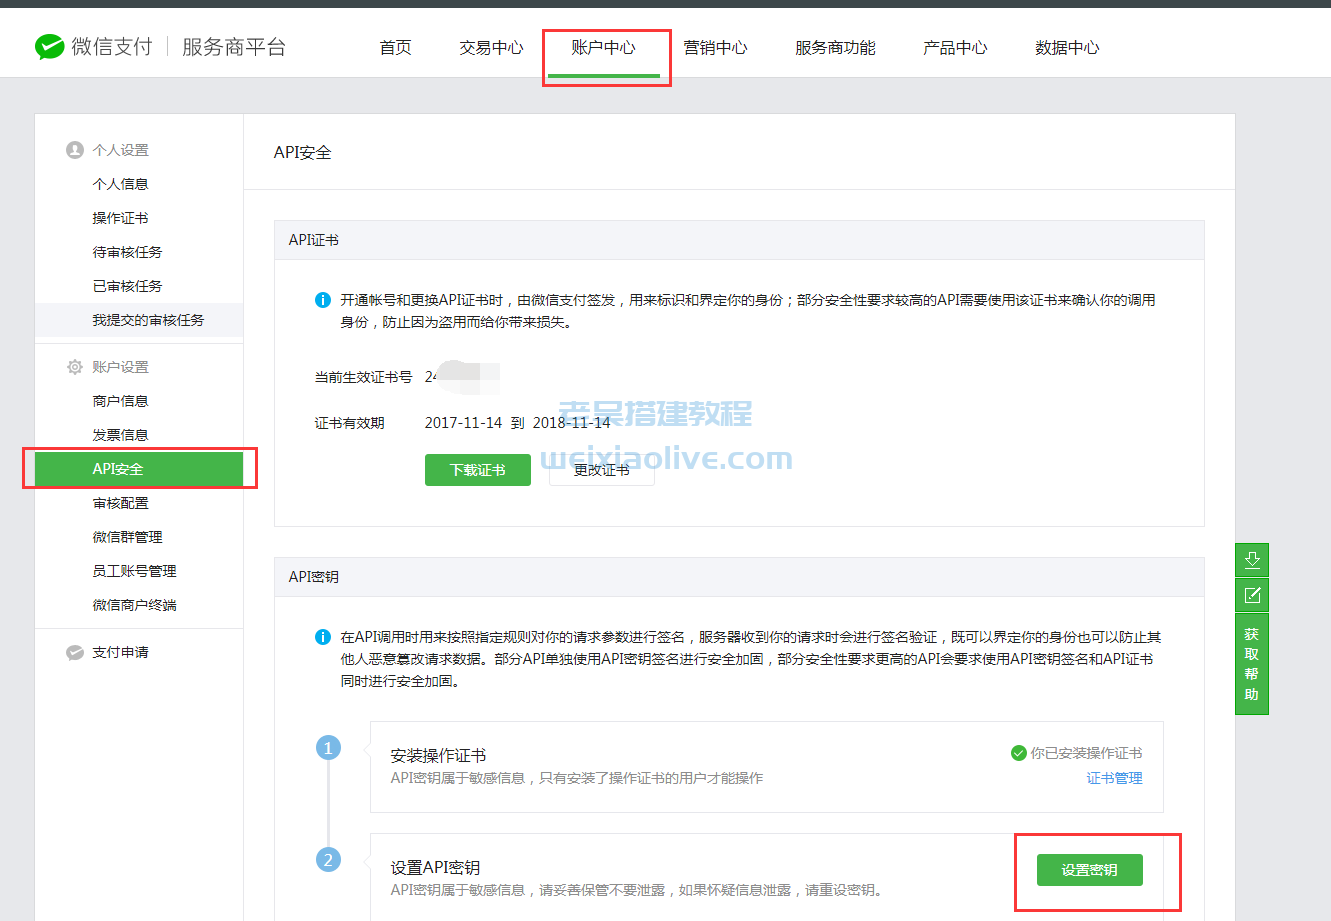 weixin支付接口申请及后台配置详细图文教程  第23张